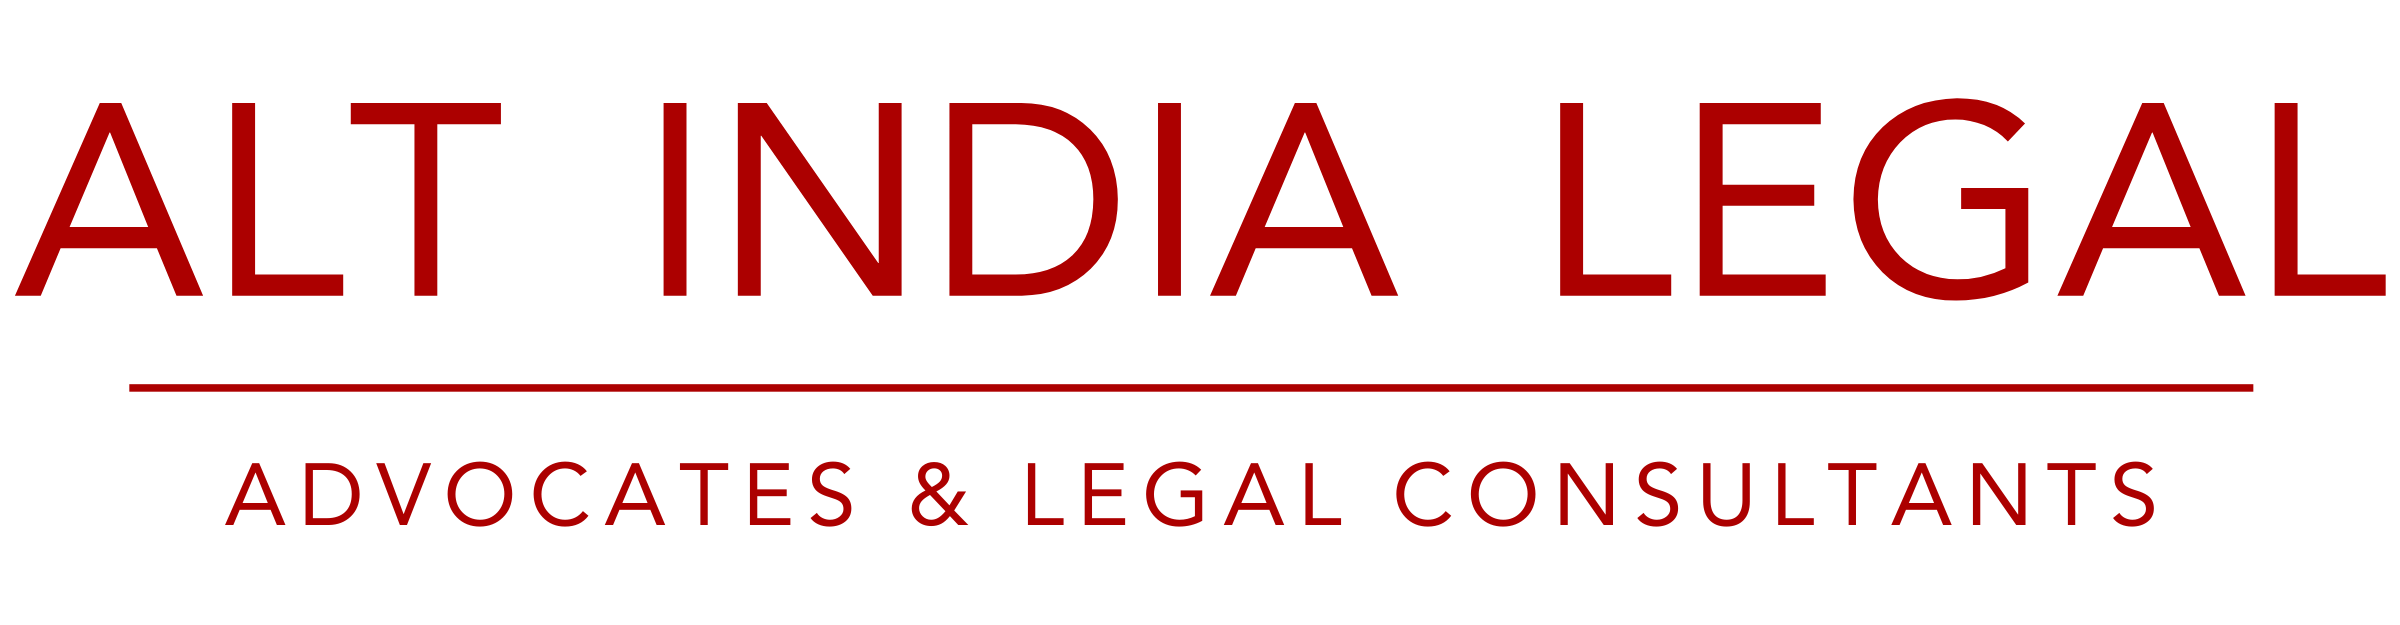 Alt India Legal